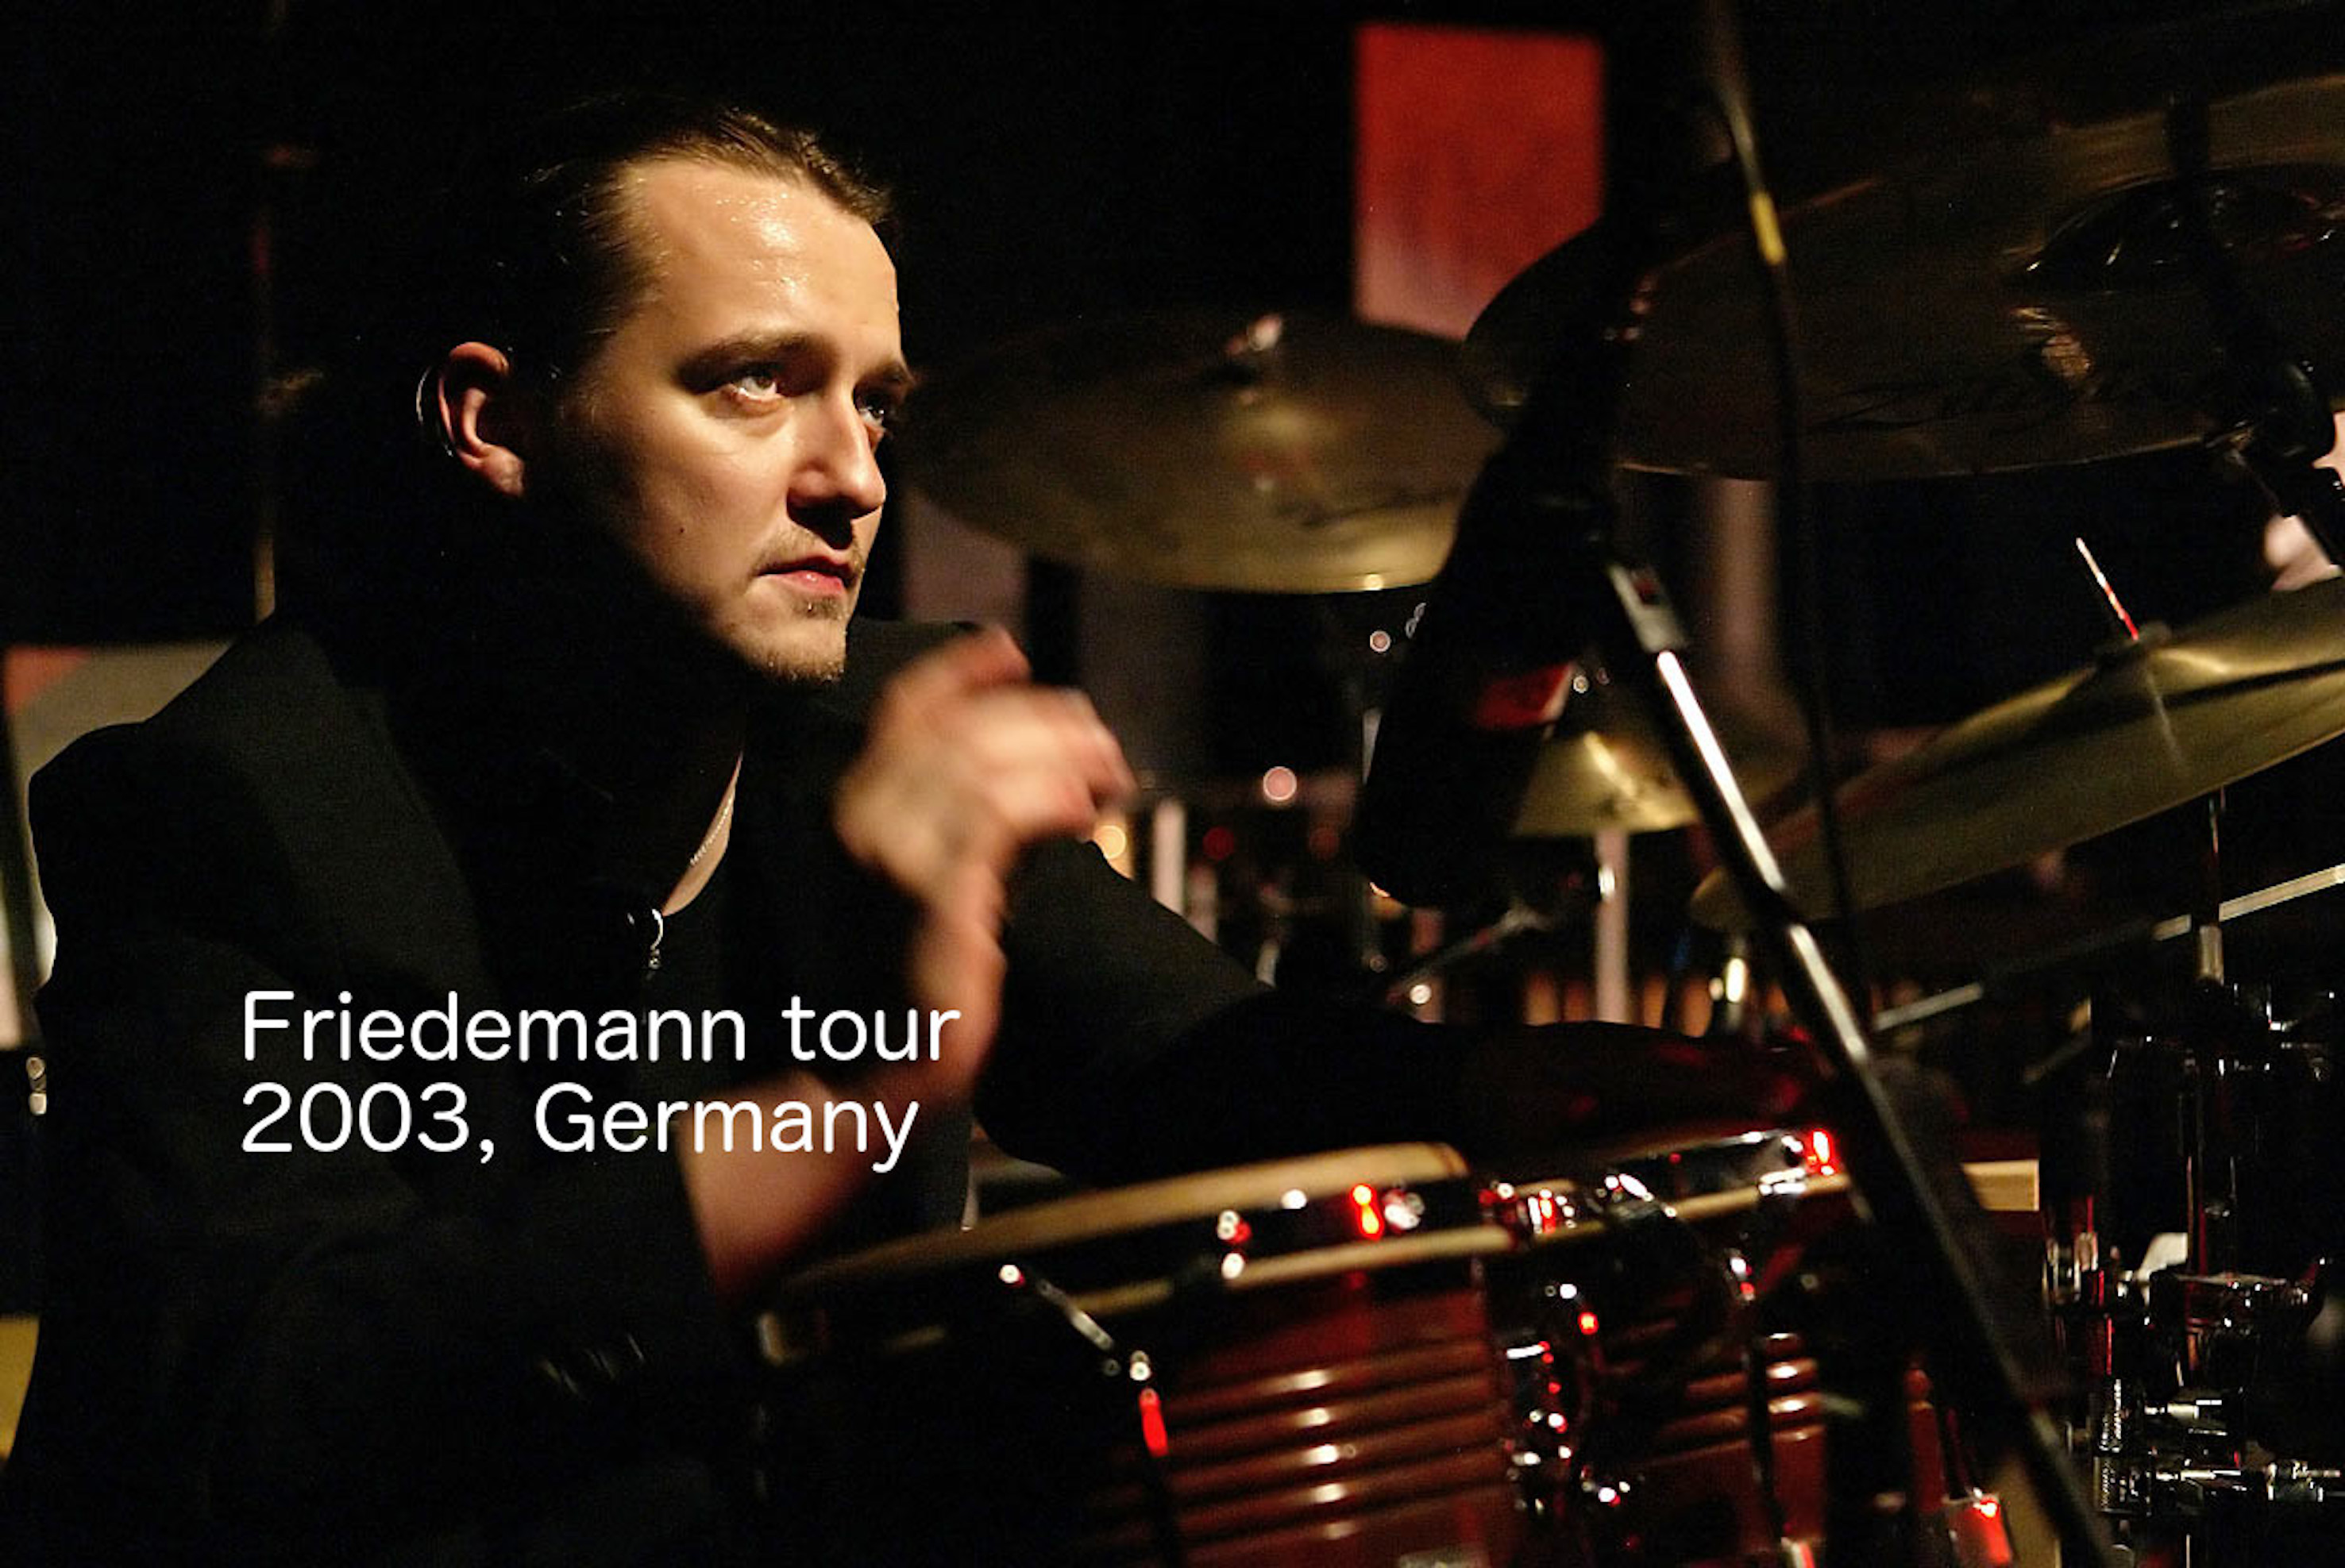 Friedemann tour 2003